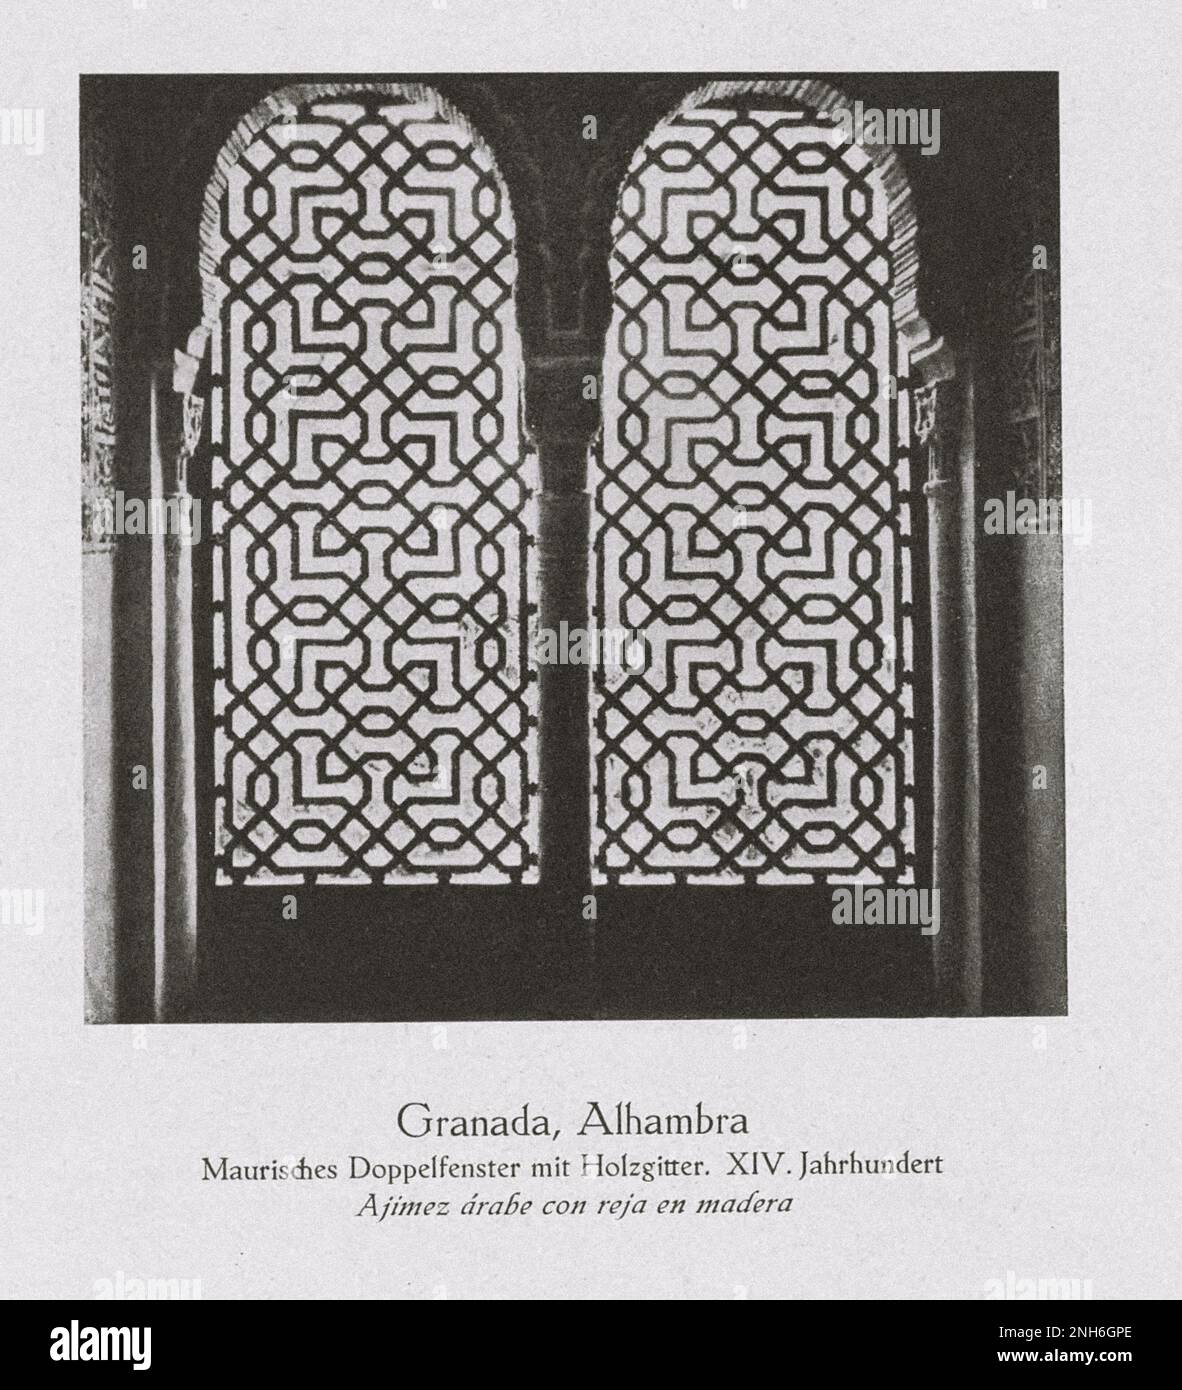 Architecture de la vieille Espagne. Photo d'époque de l'Alhambra, Grenade. Double fenêtre mauresque avec treillis décoratif en bois. XIV siècle Banque D'Images